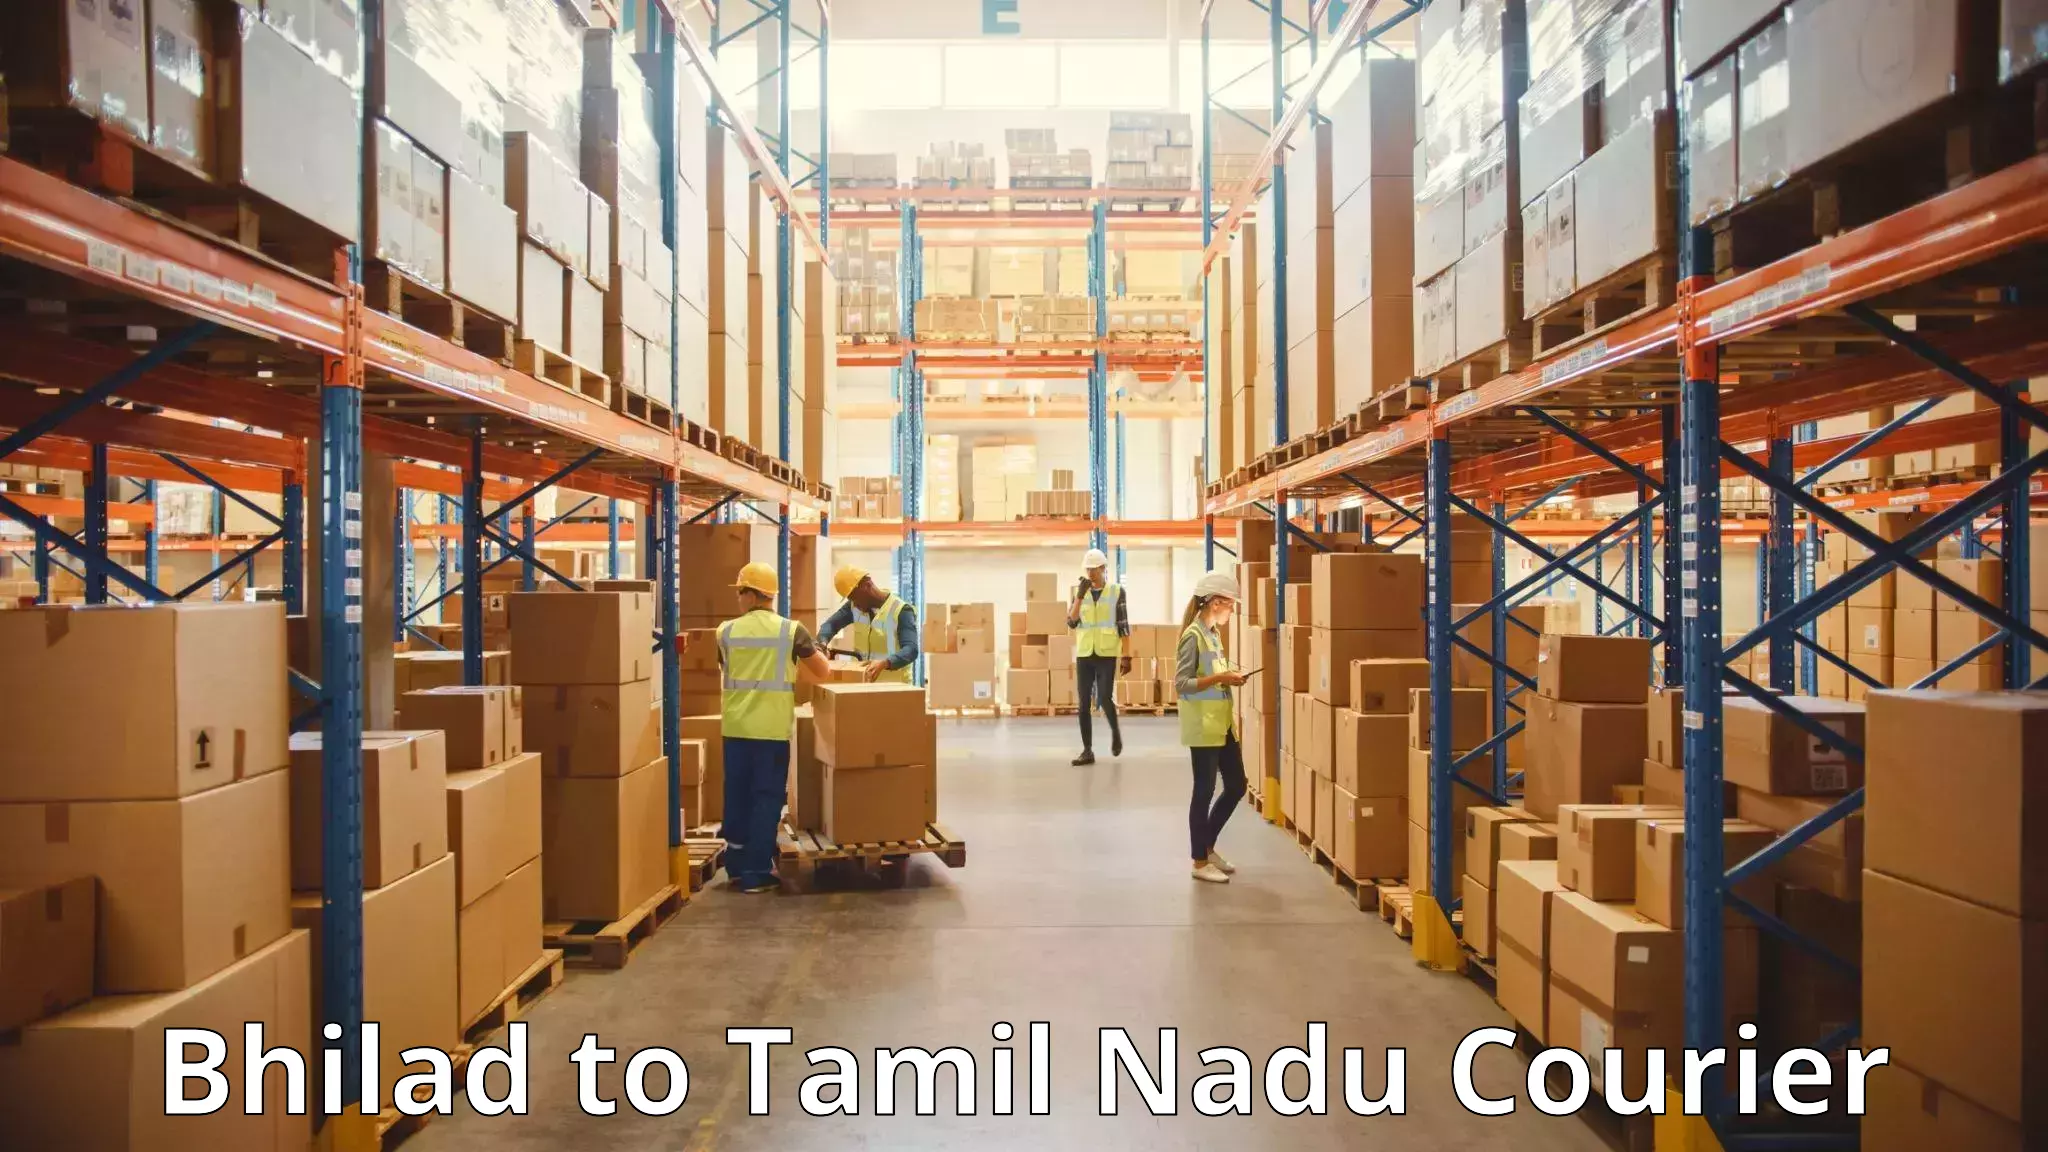 Baggage transport technology Bhilad to Tamil Nadu